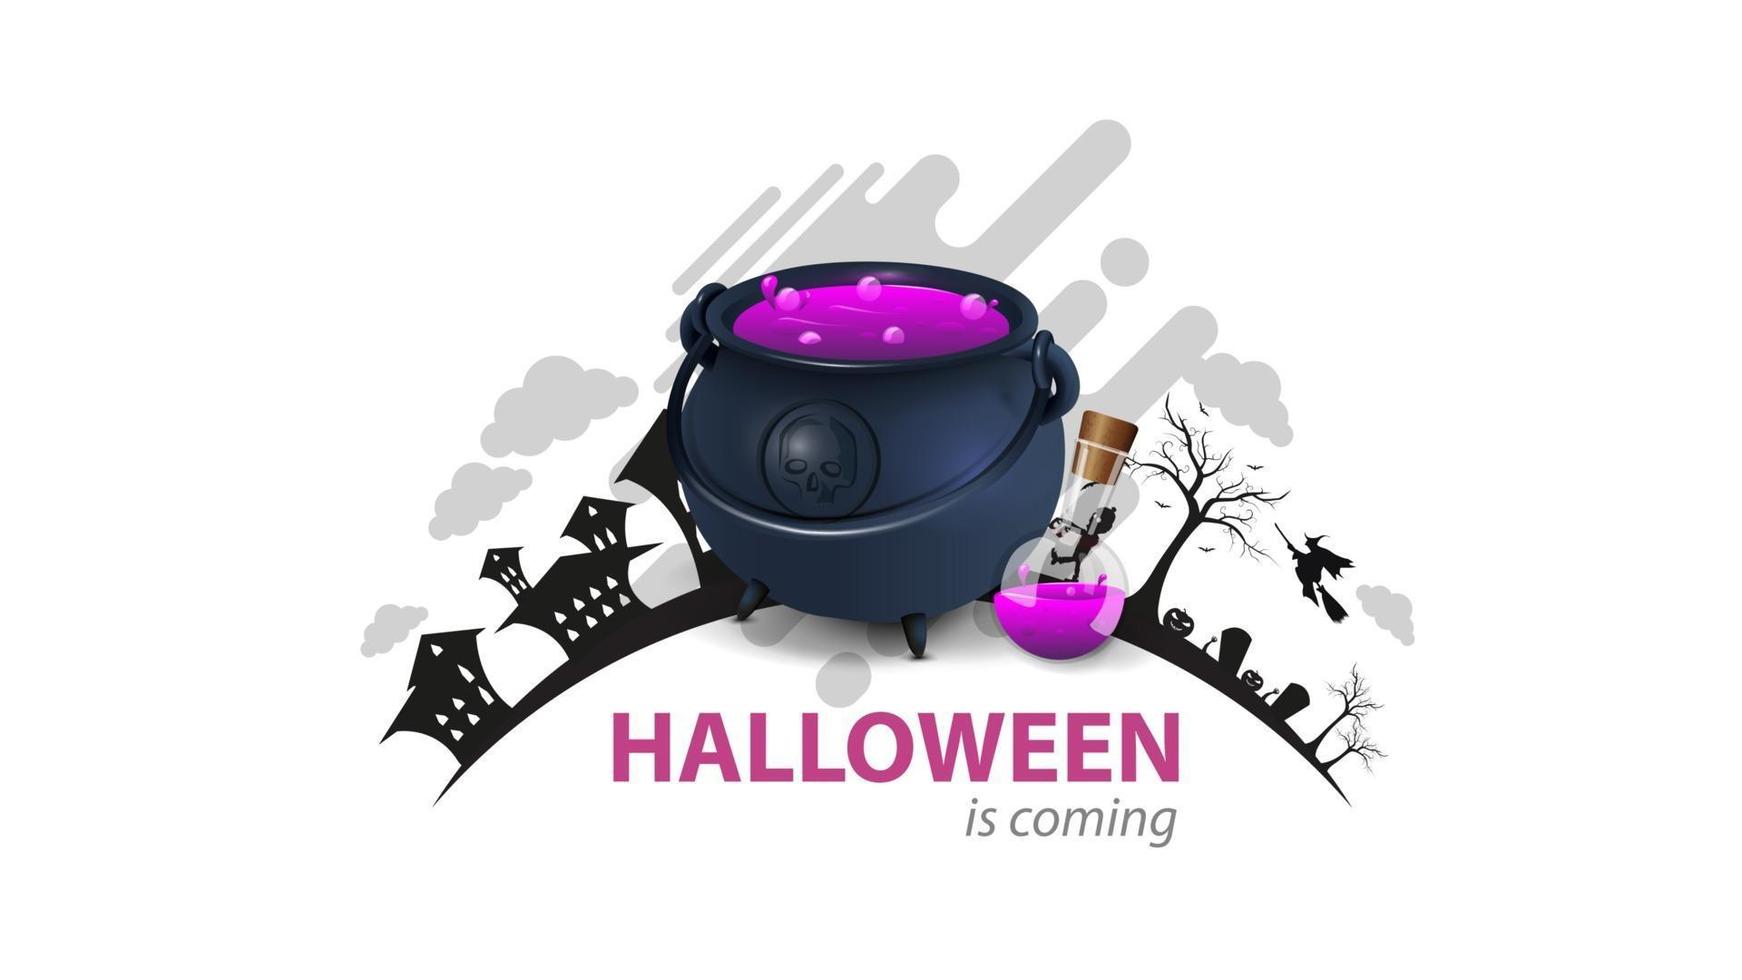 Se acerca halloween, tarjeta de felicitación blanca con caldero de brujas con poción. el logo con la silueta de la tierra con la noche de halloween vector